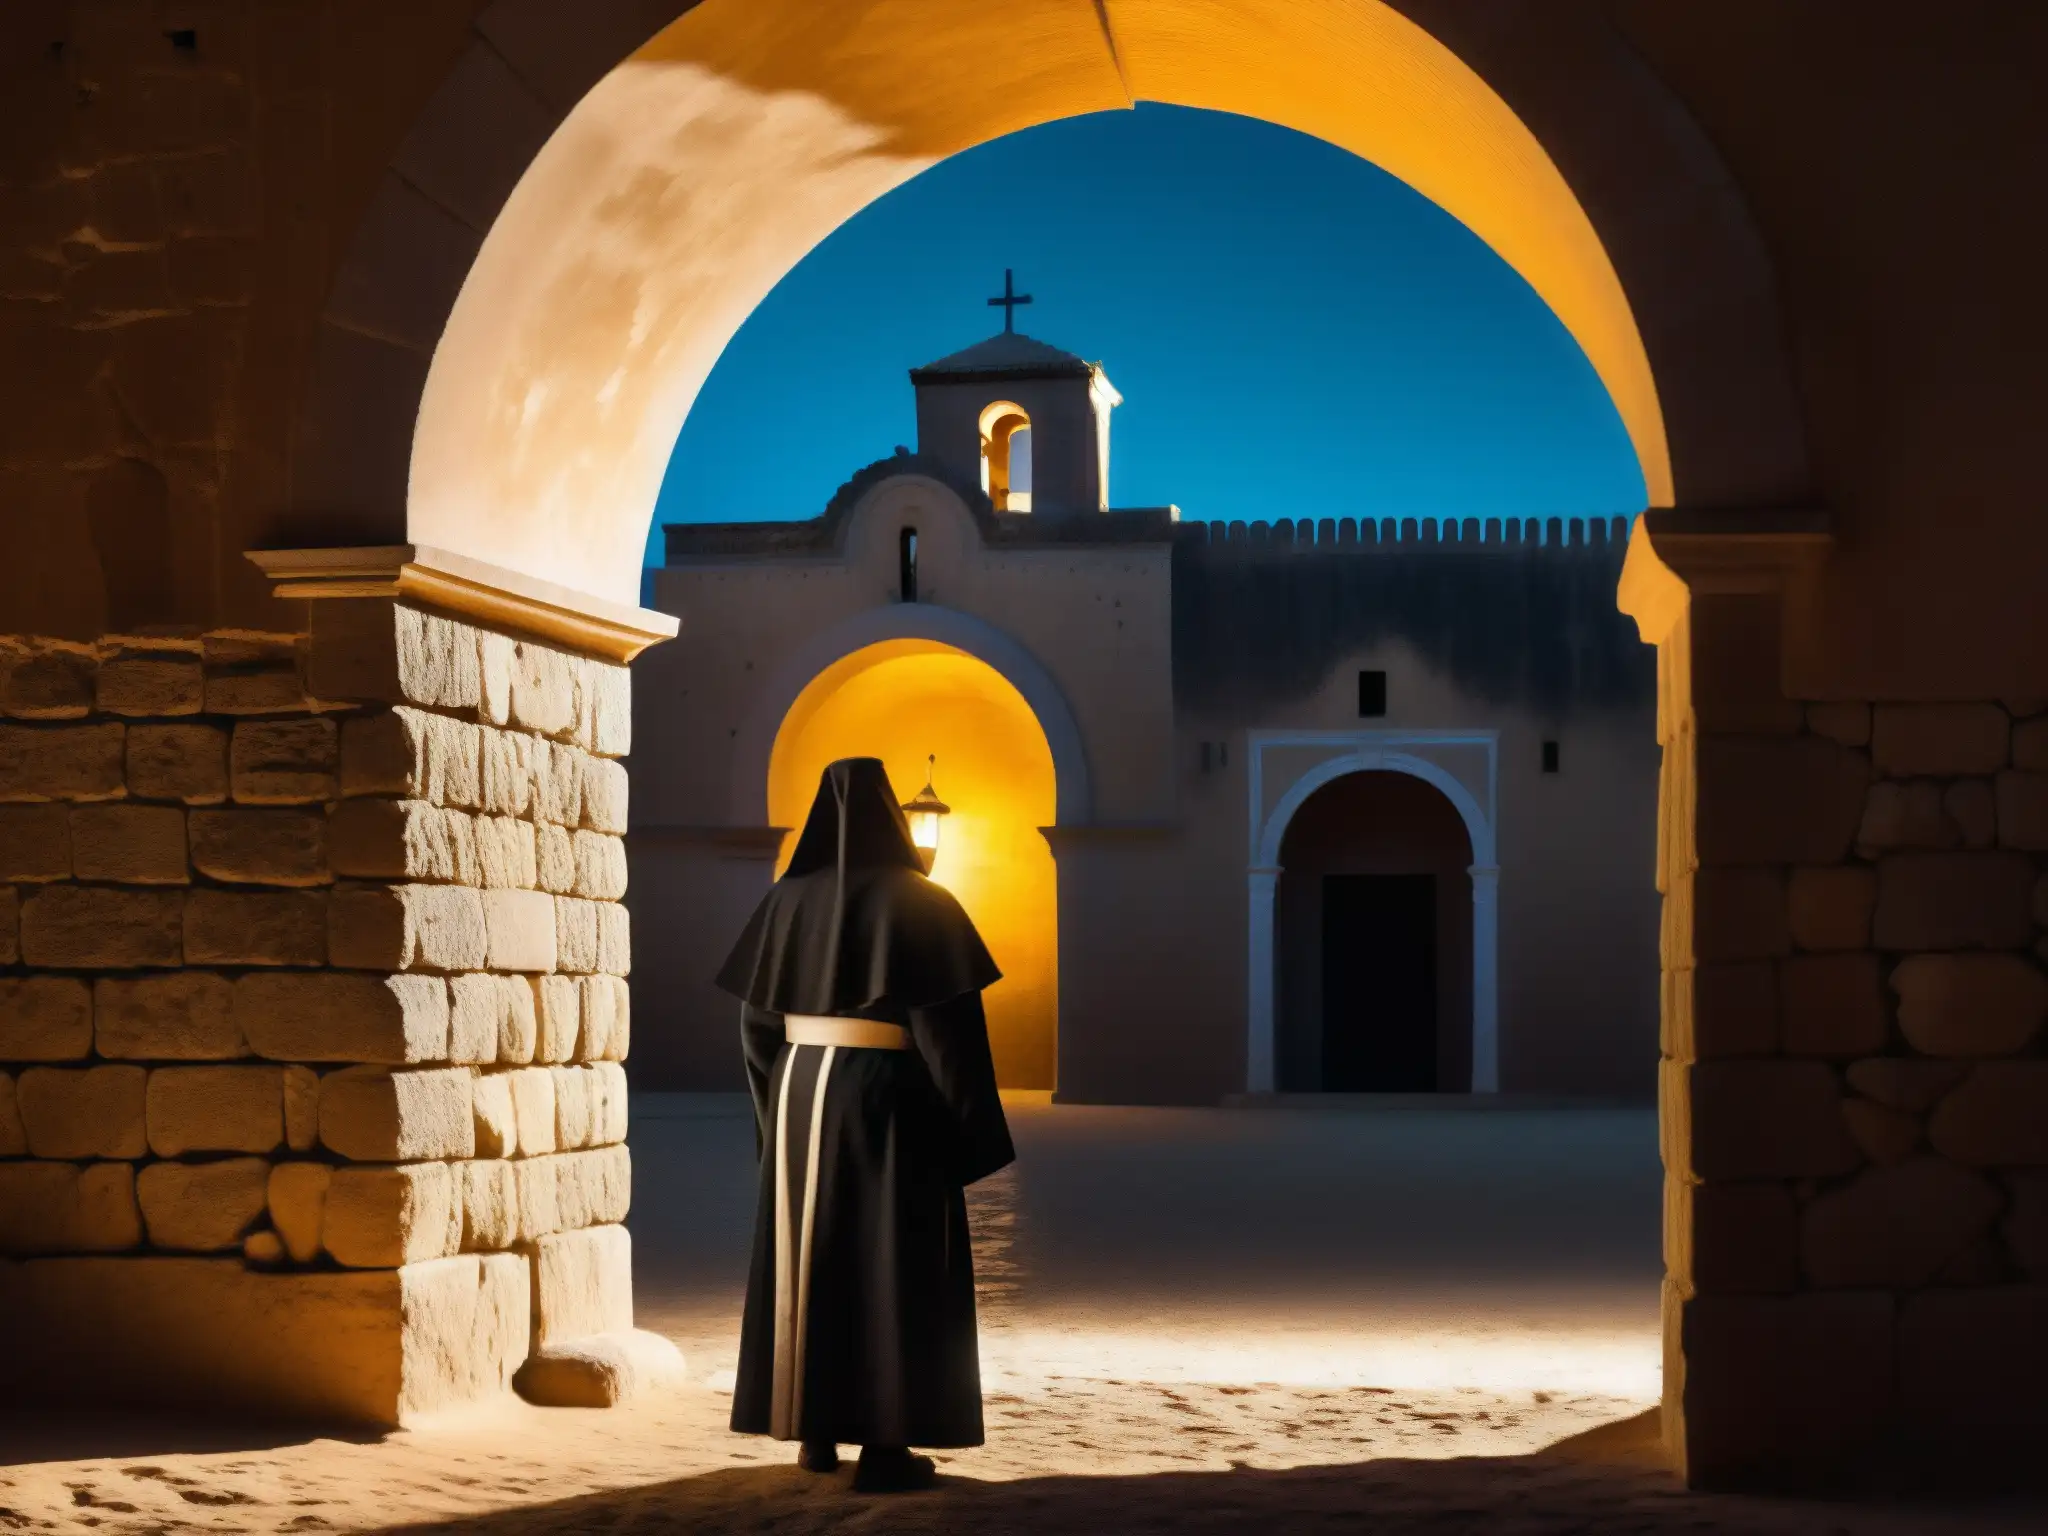 Silueta de un fantasma de monja en el Convento de la Concepción, envuelto en misterio y mito